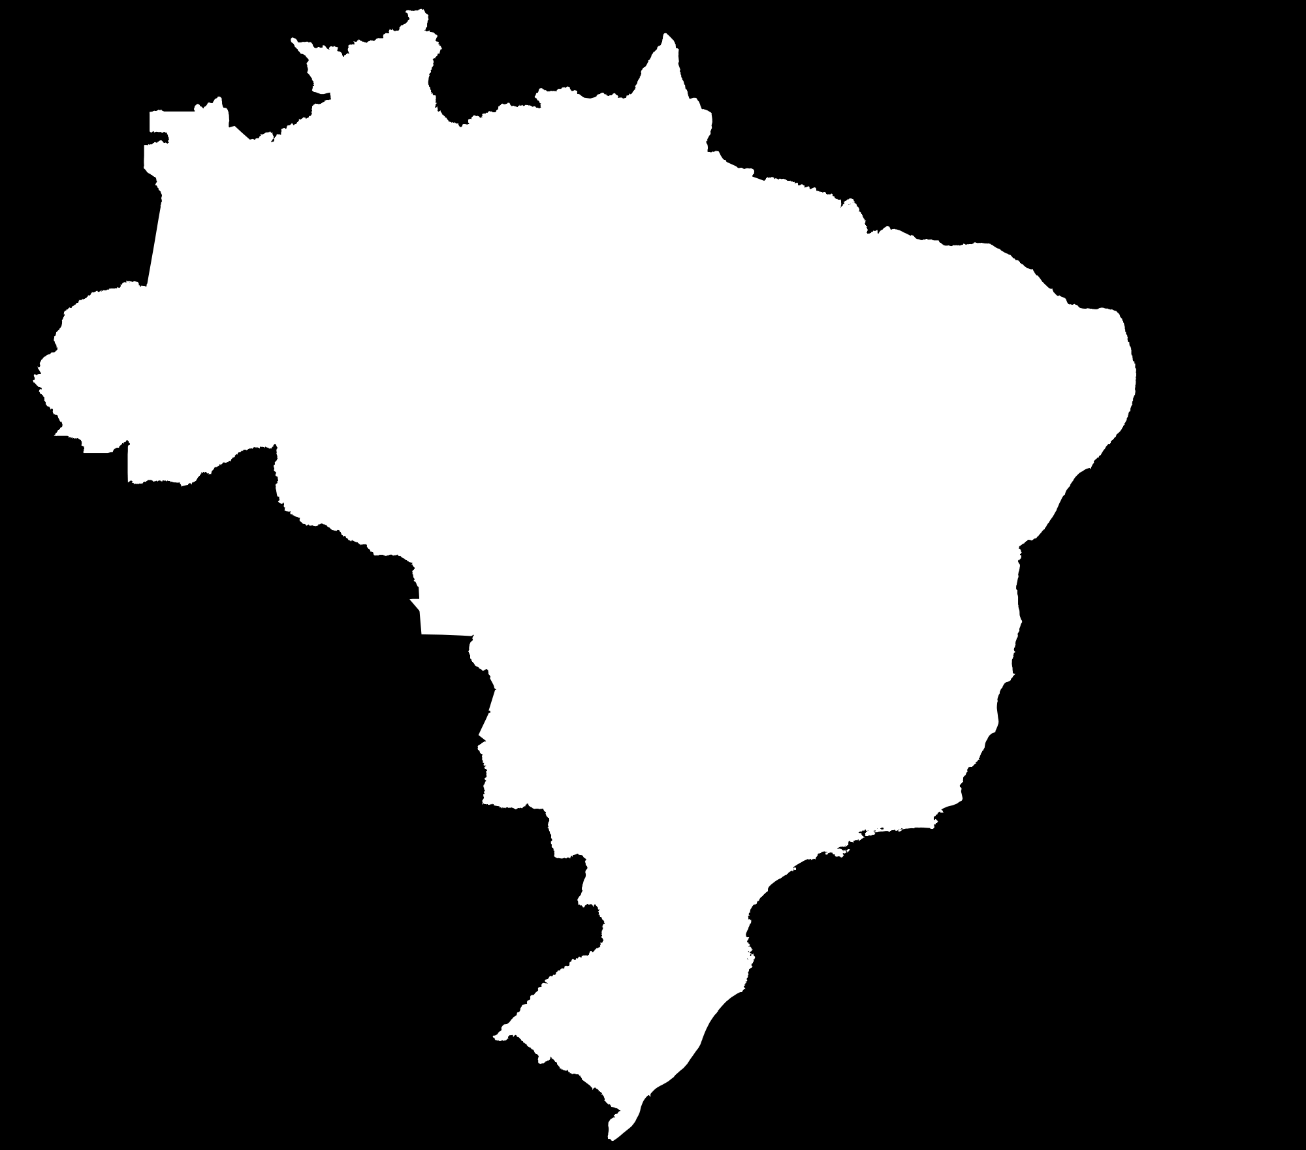 Empresas-filhas: localização Levantamento da Agência de Inovação Inova Unicamp: Estado % de empresas São Paulo 93,6%